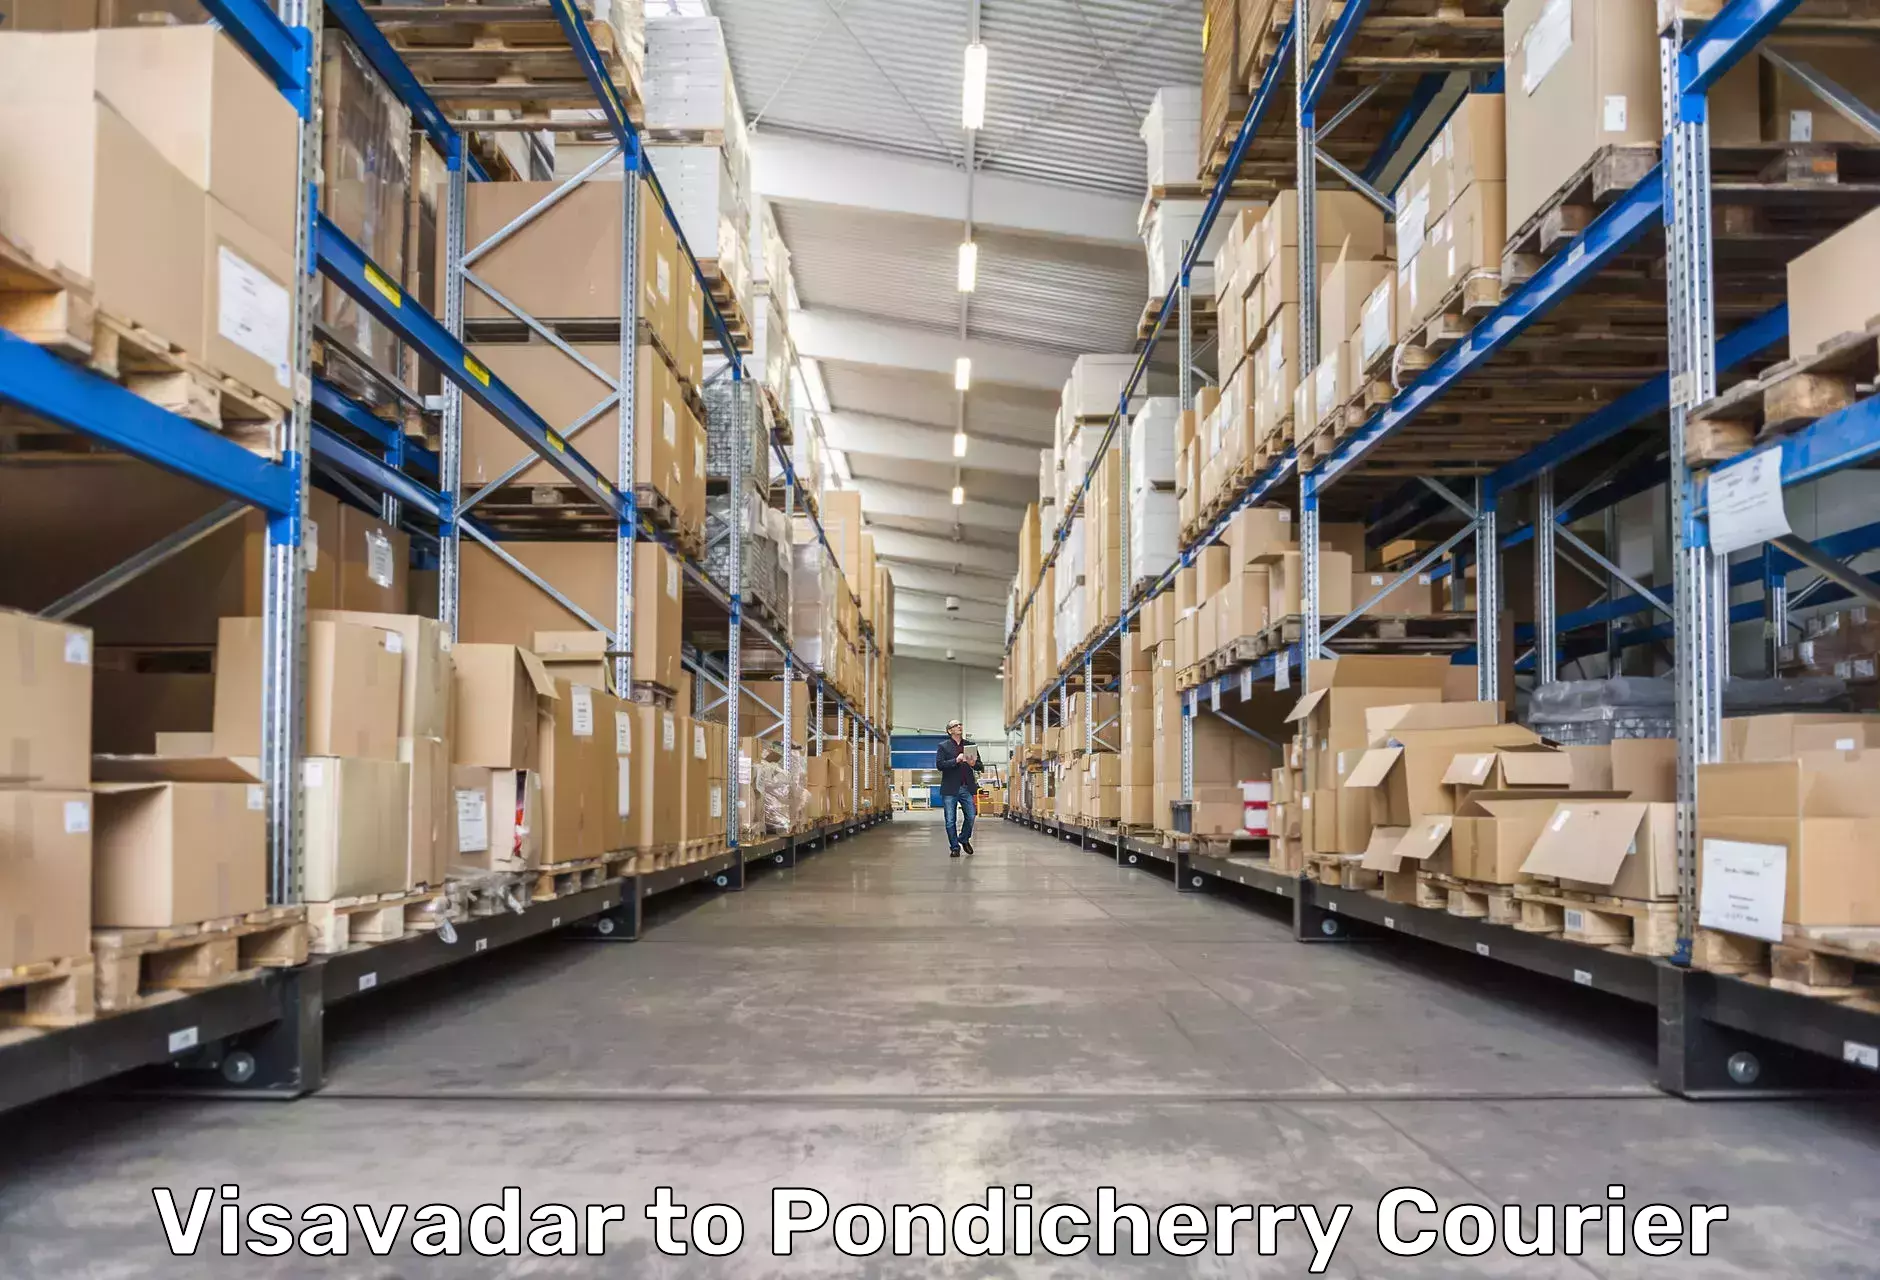 Door-to-door freight service Visavadar to Pondicherry University